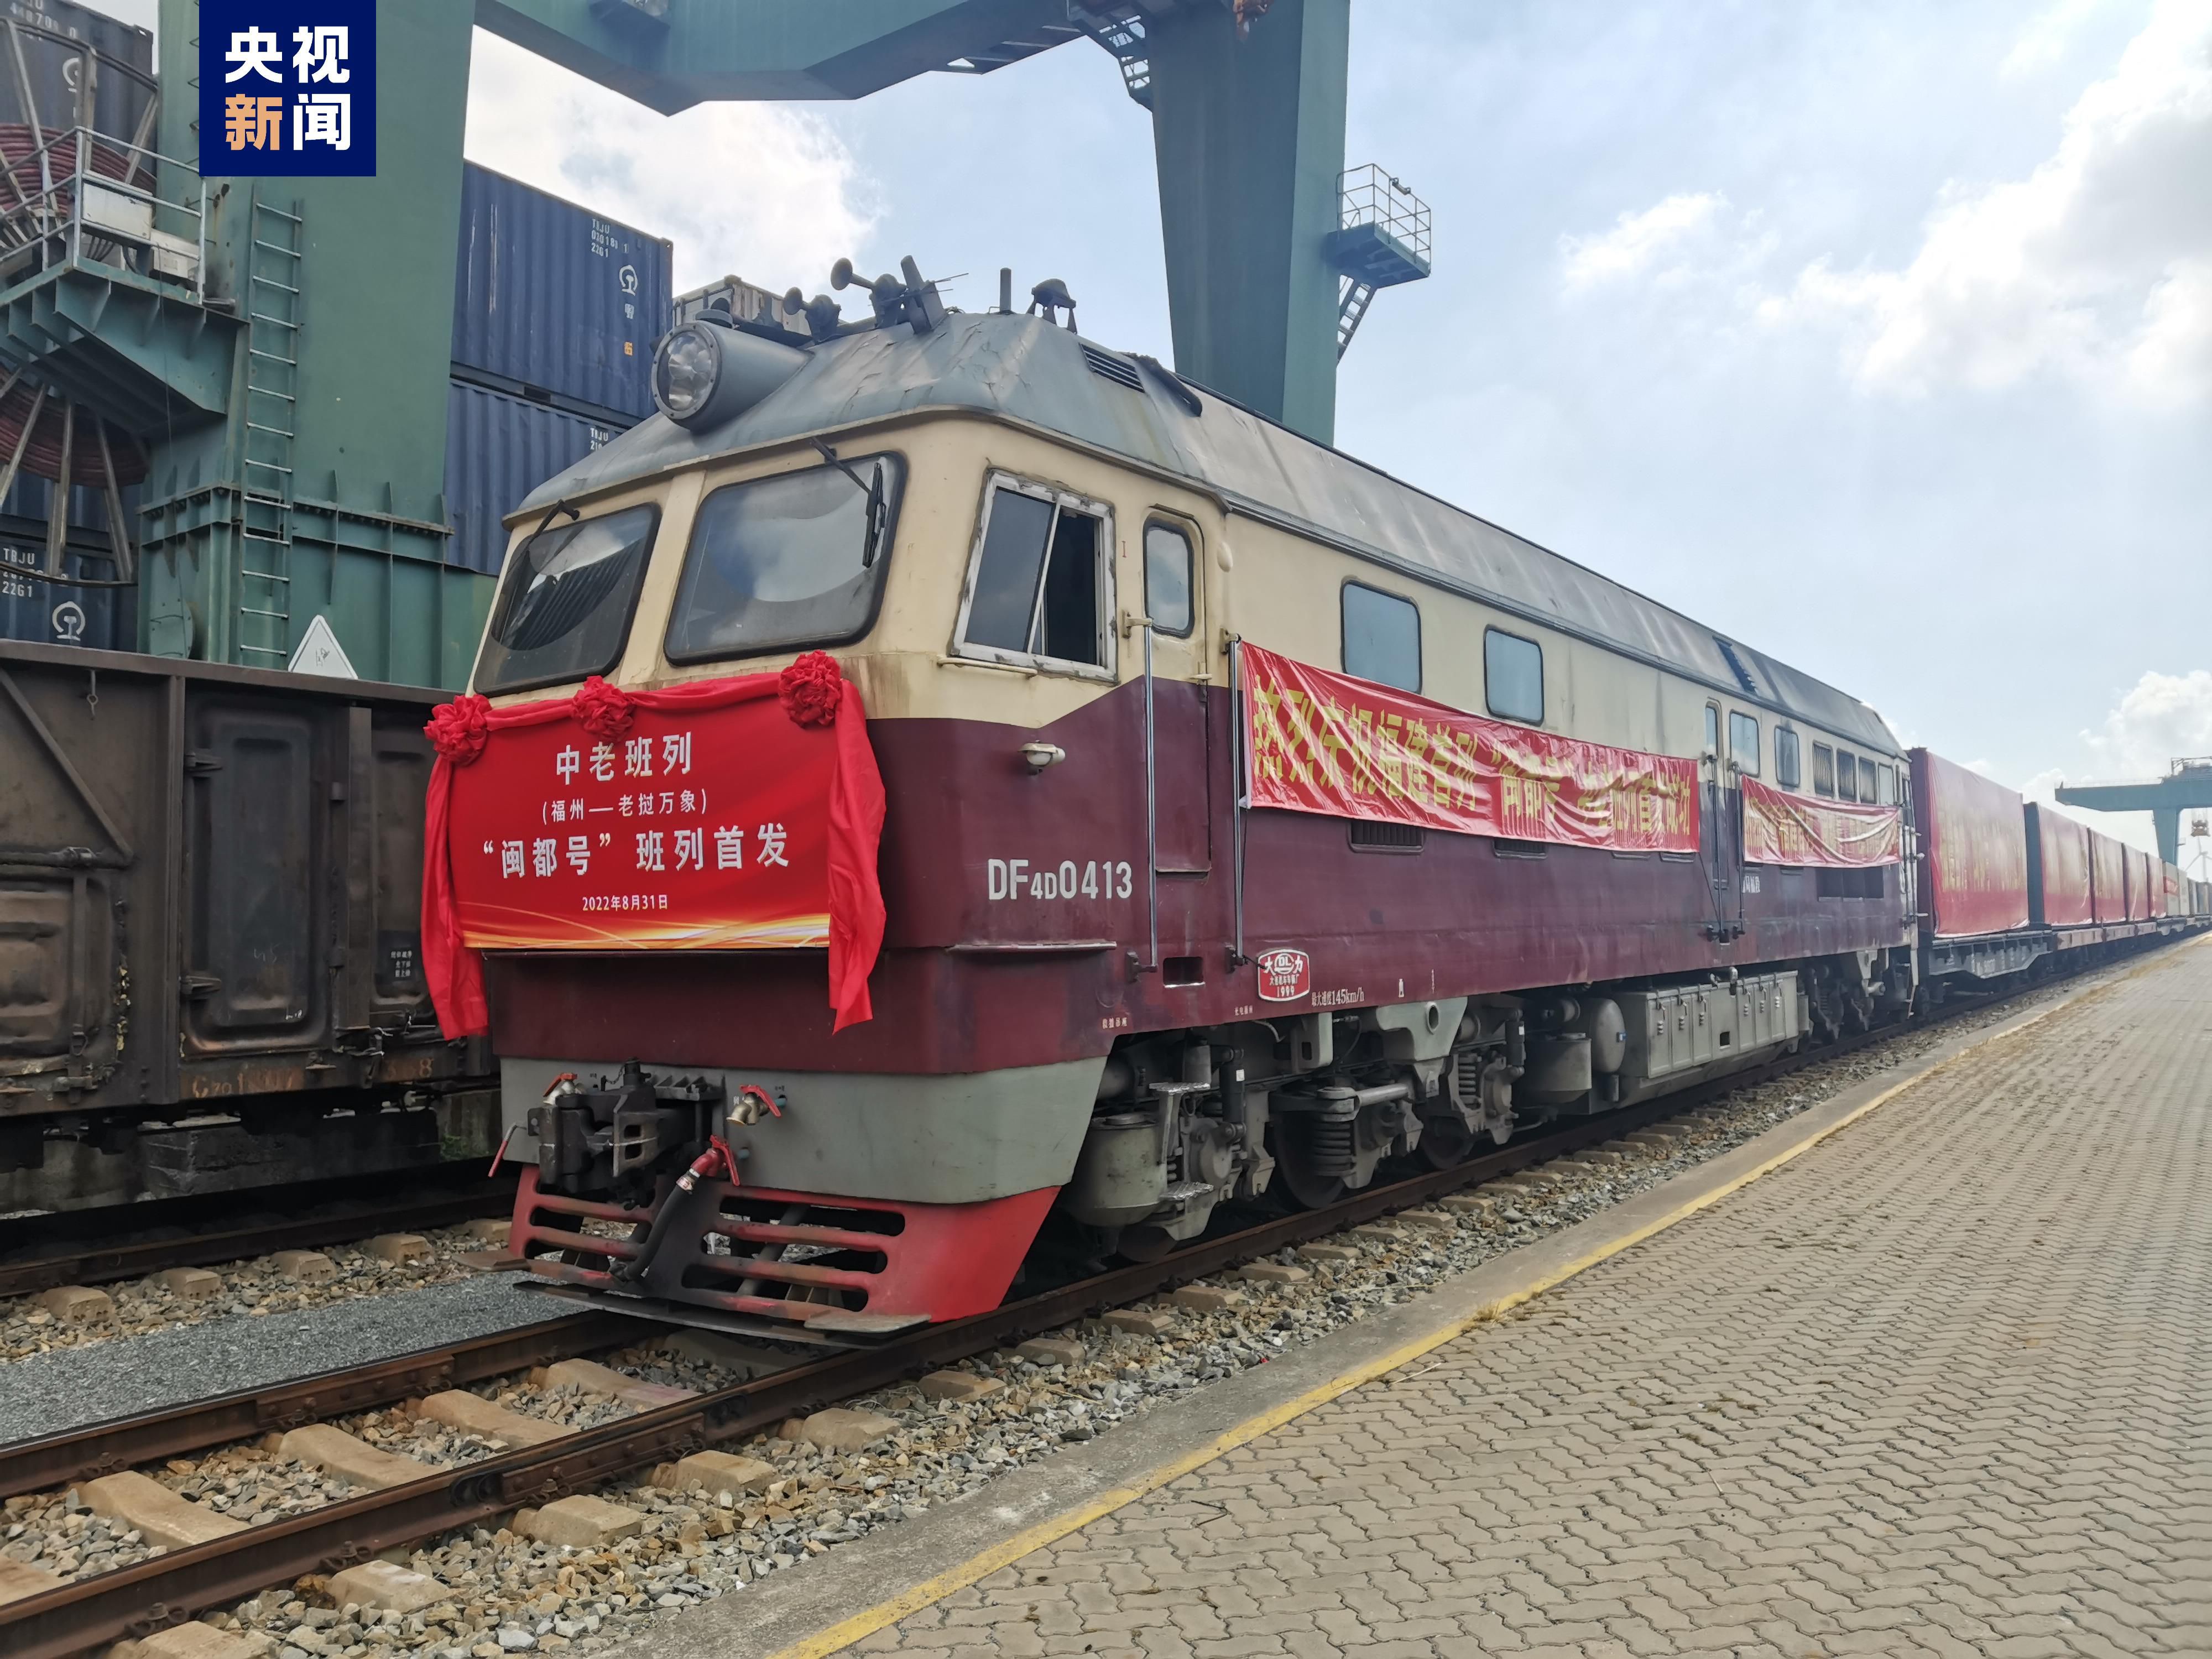 【中国铁路】黑龙江省建龙西林钢铁集团公司运输处铁路机车配属表（截止2021.2） - 哔哩哔哩